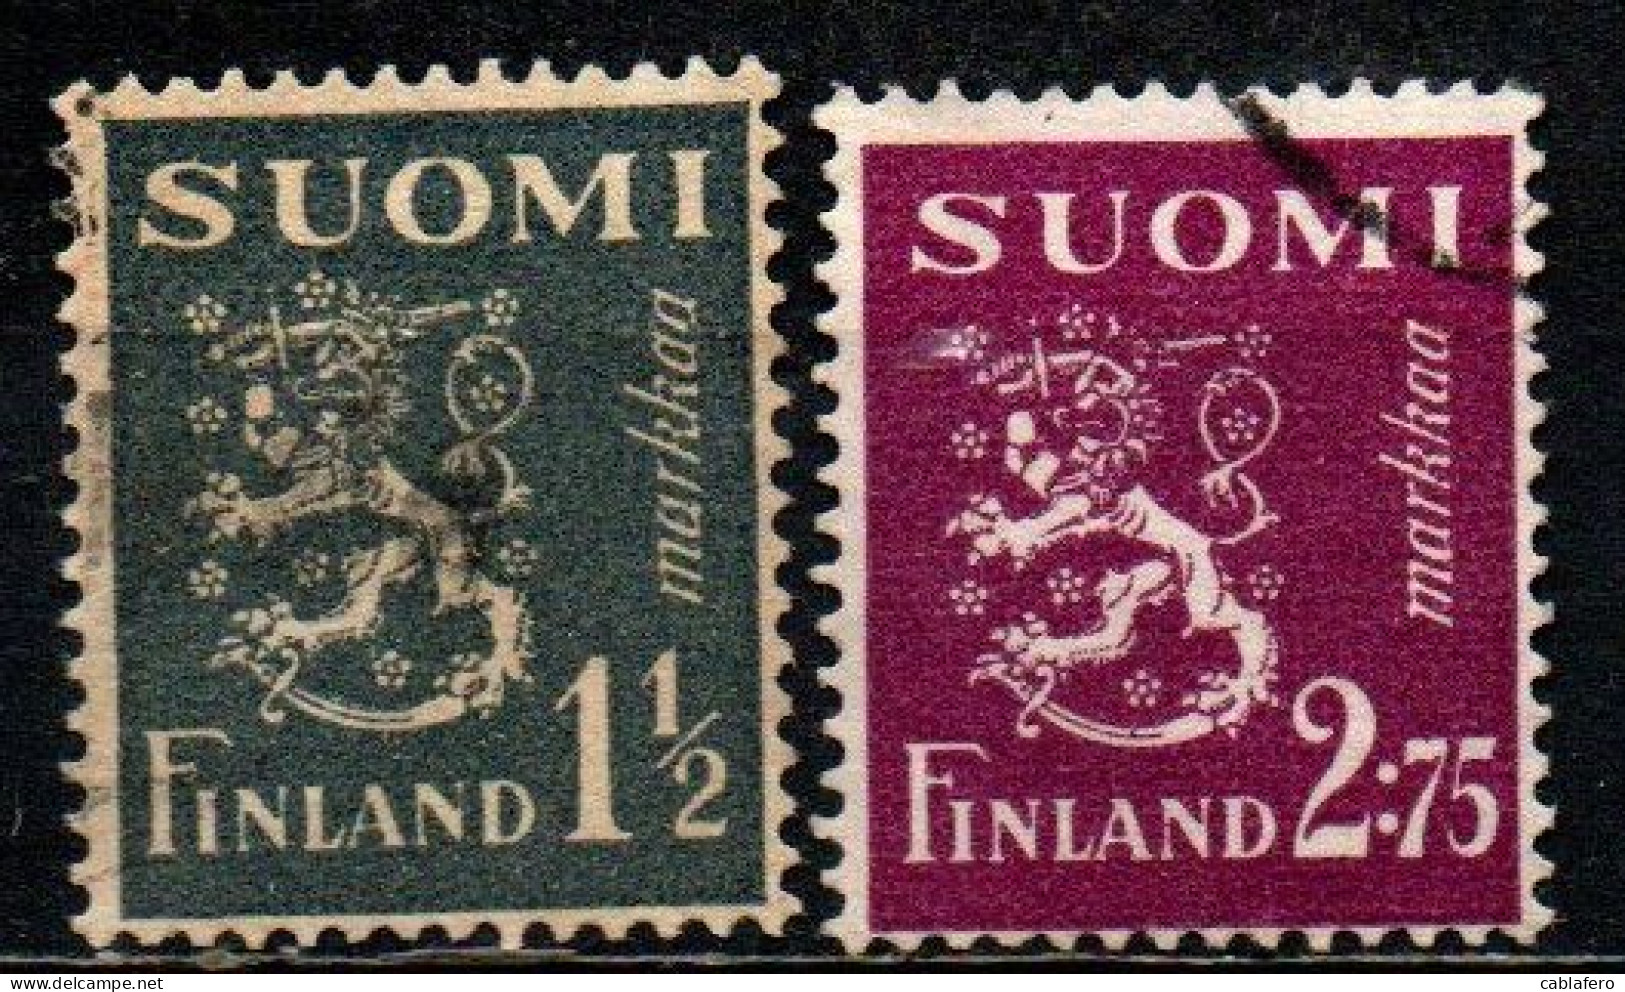 FINLANDIA - 1940 - LEONE RAMPANTE - NUOVO TIPO SU FONDO UNITO - USATI - Used Stamps